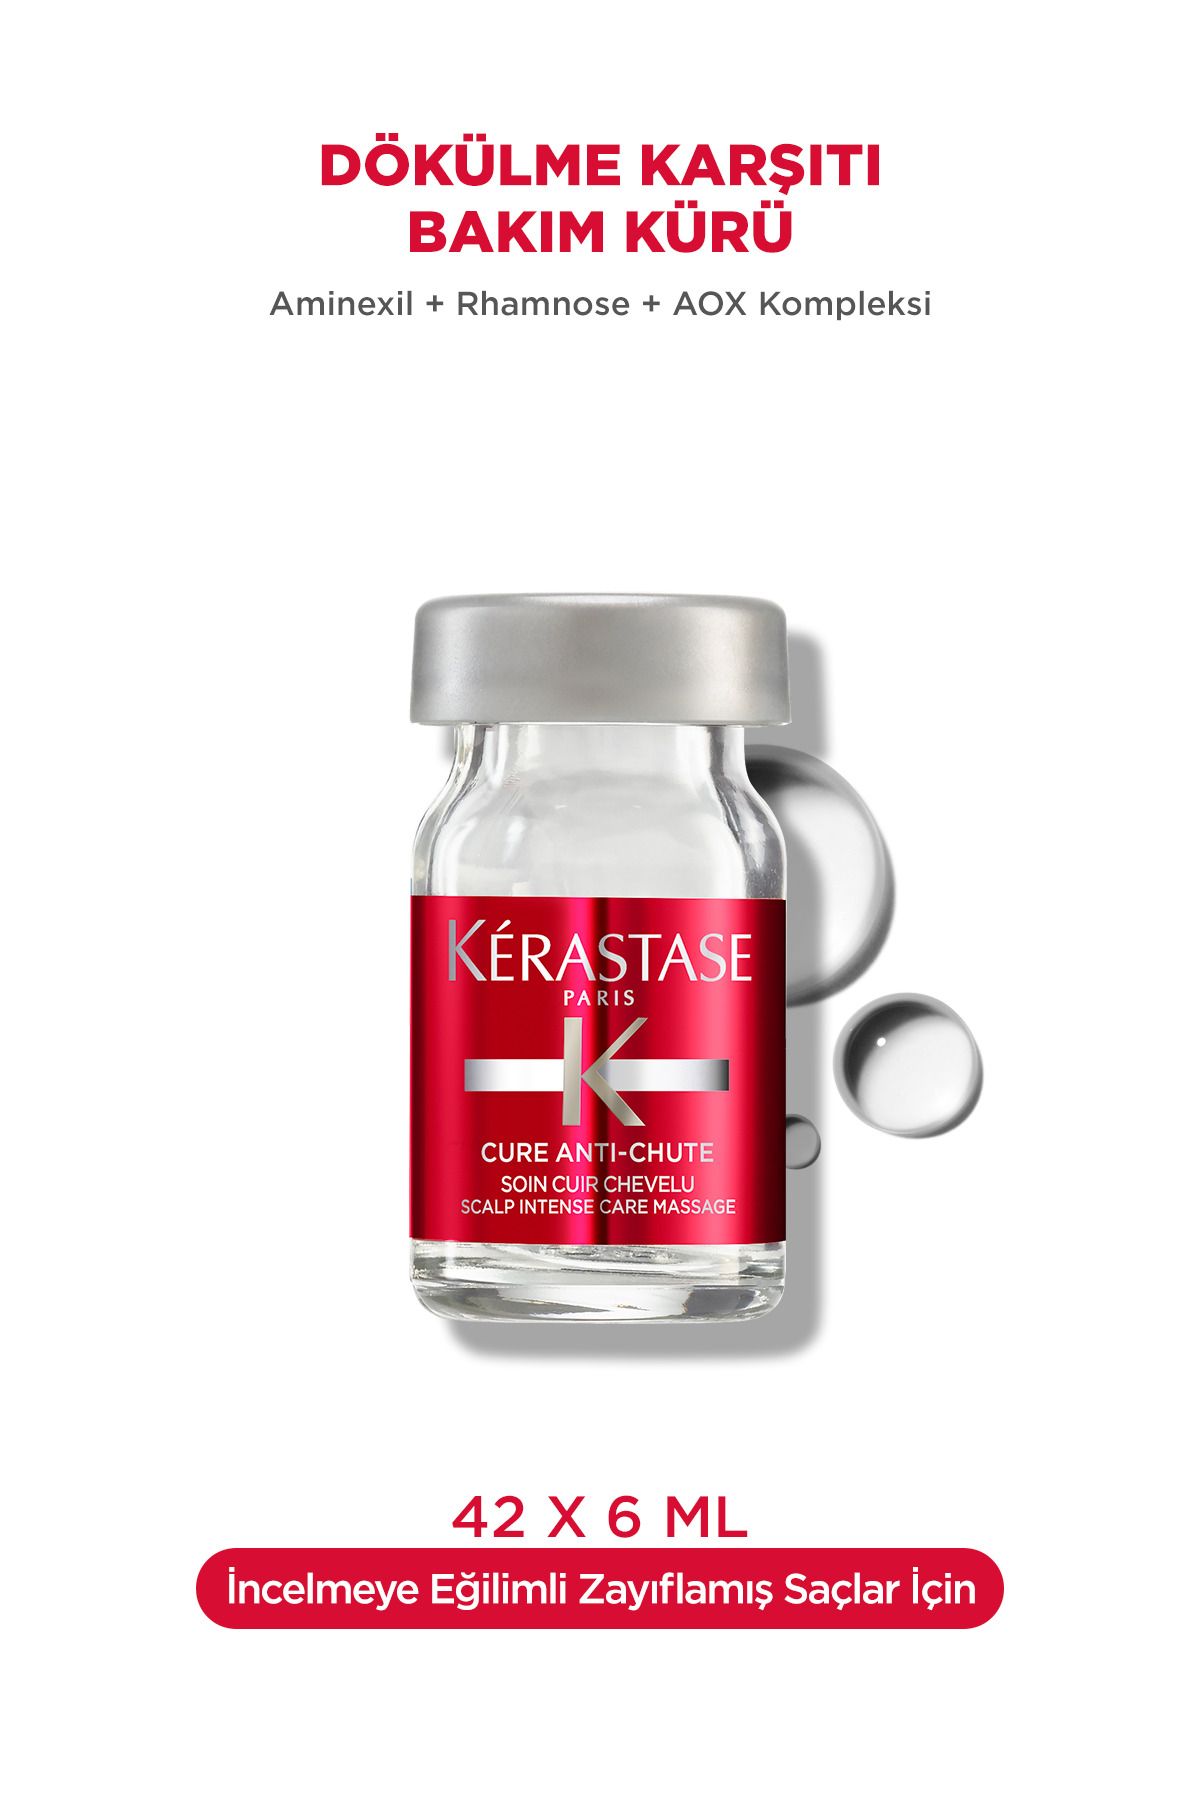 Kerastase Specifique Cure Anti-chute Dökülme Karşıtı Bakım Kürü 6ml*42